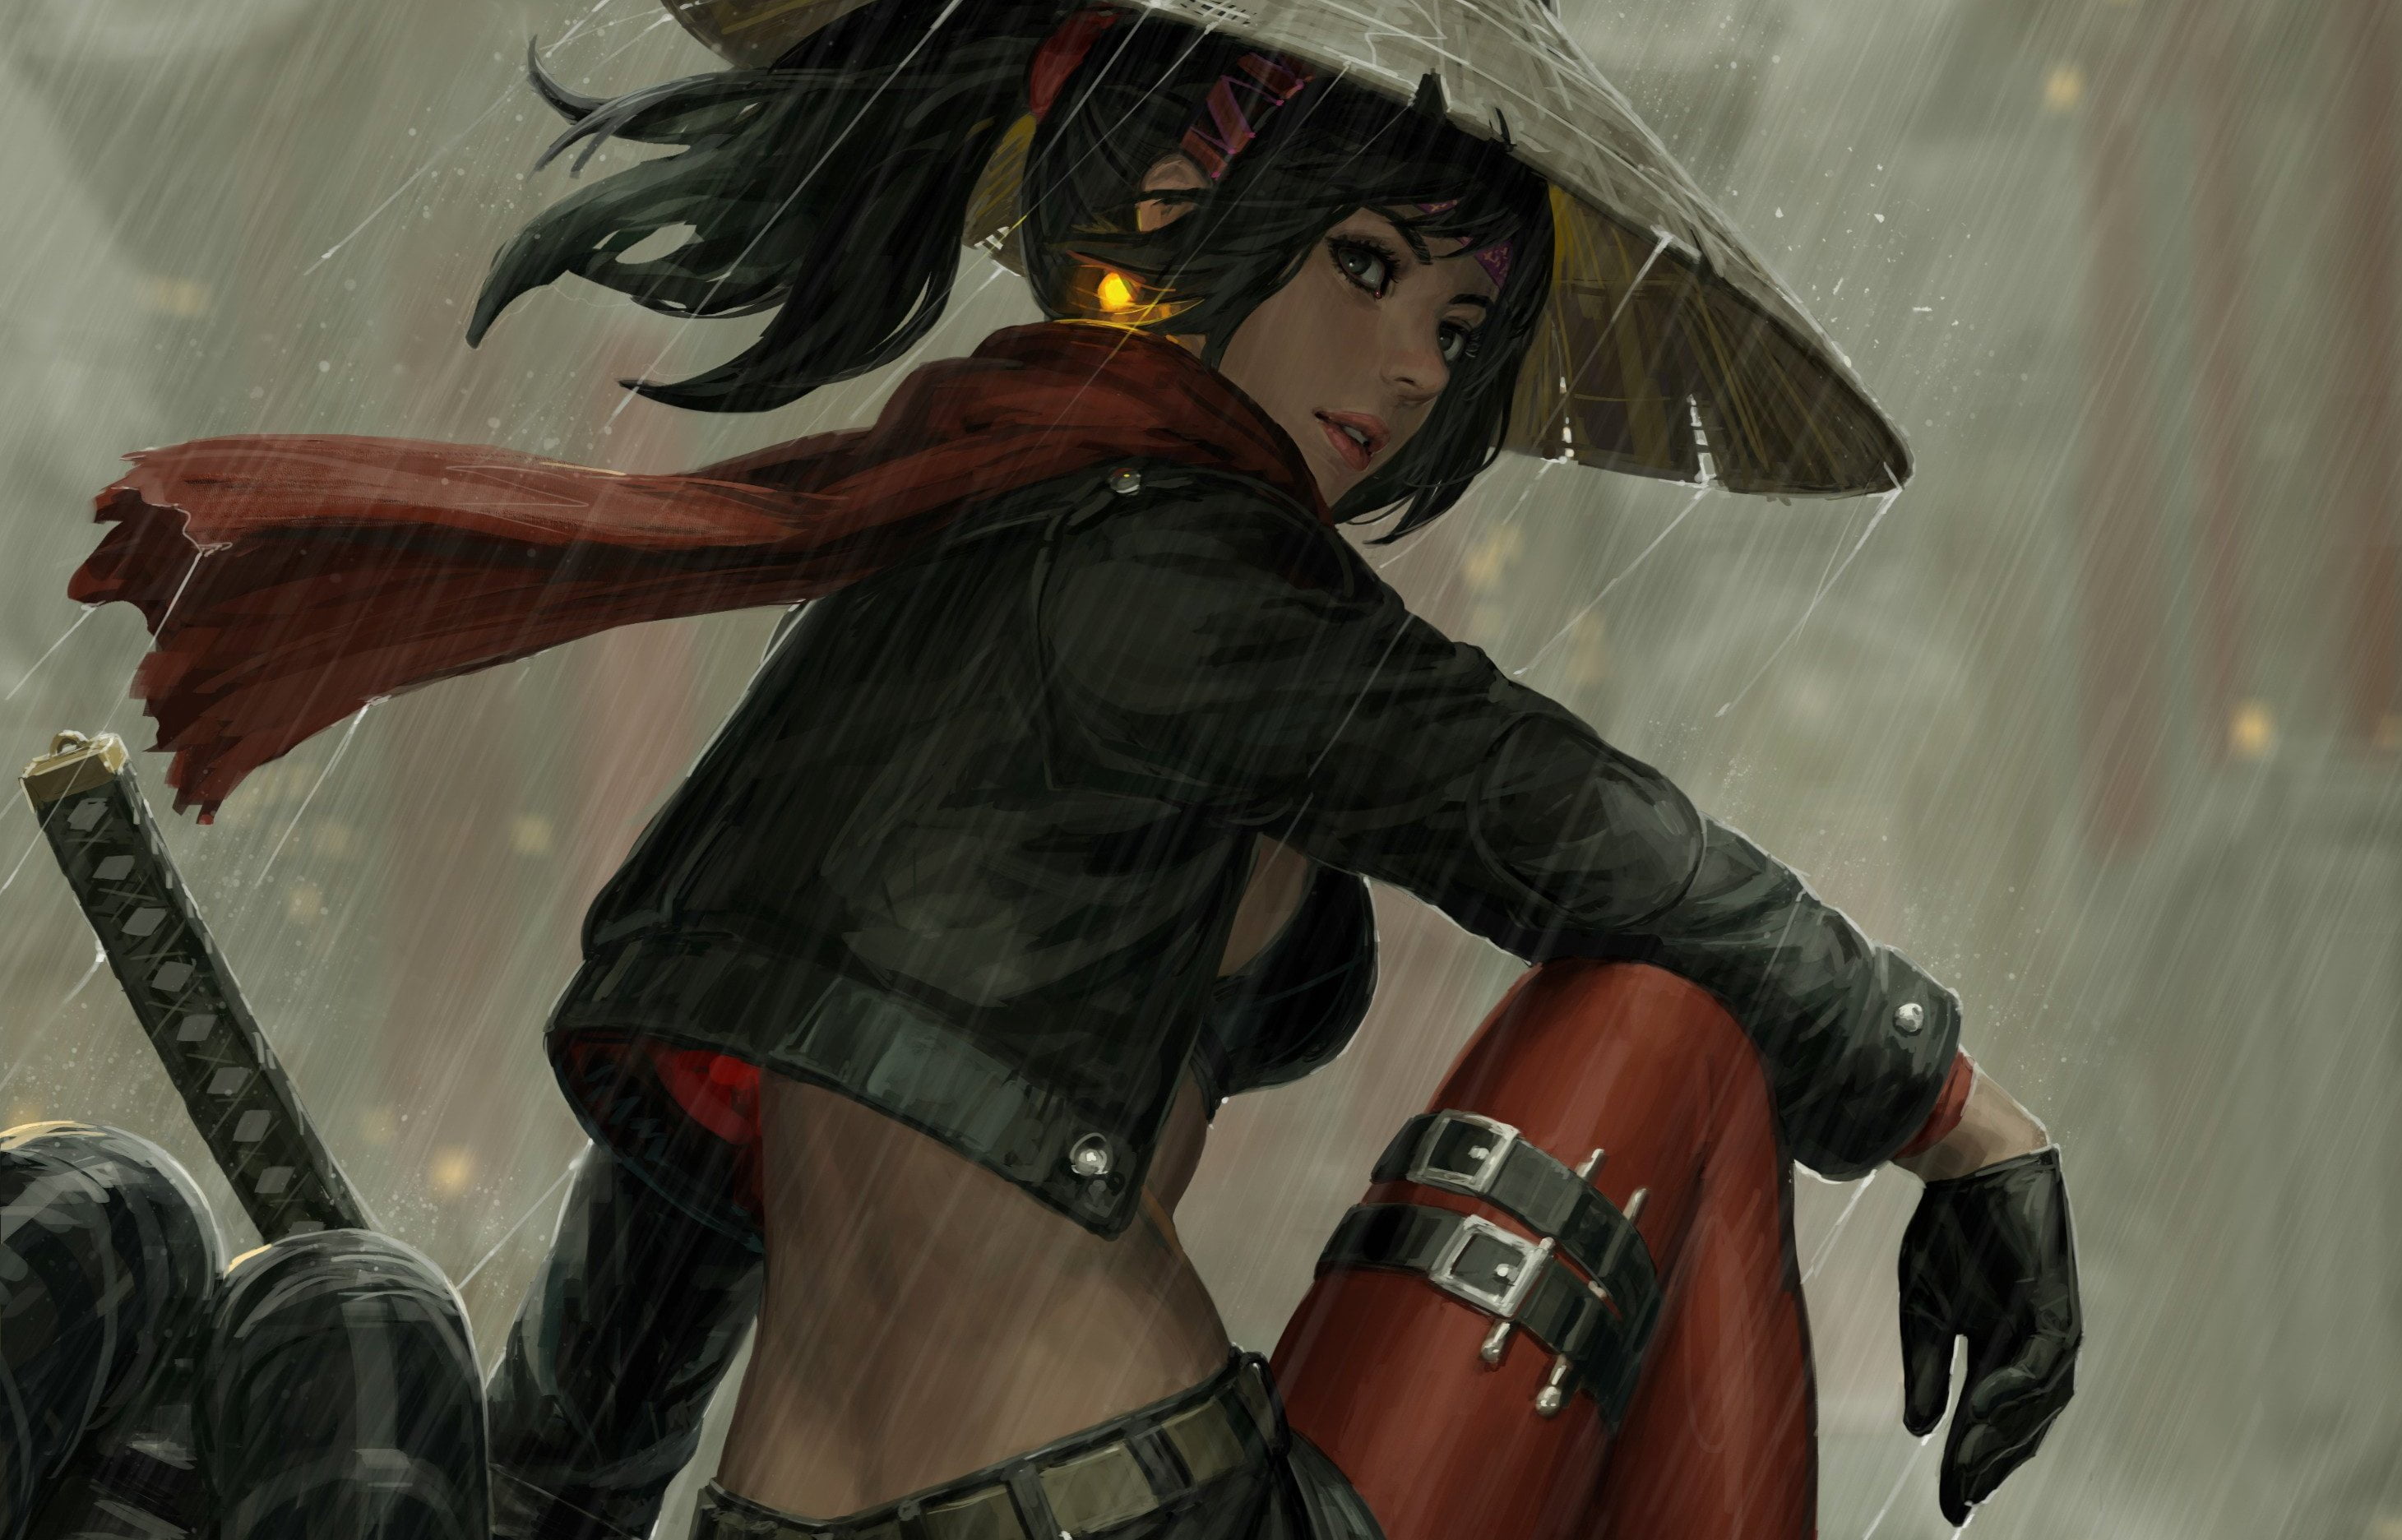 Samurai Girl In The Rain - HD Wallpaper 